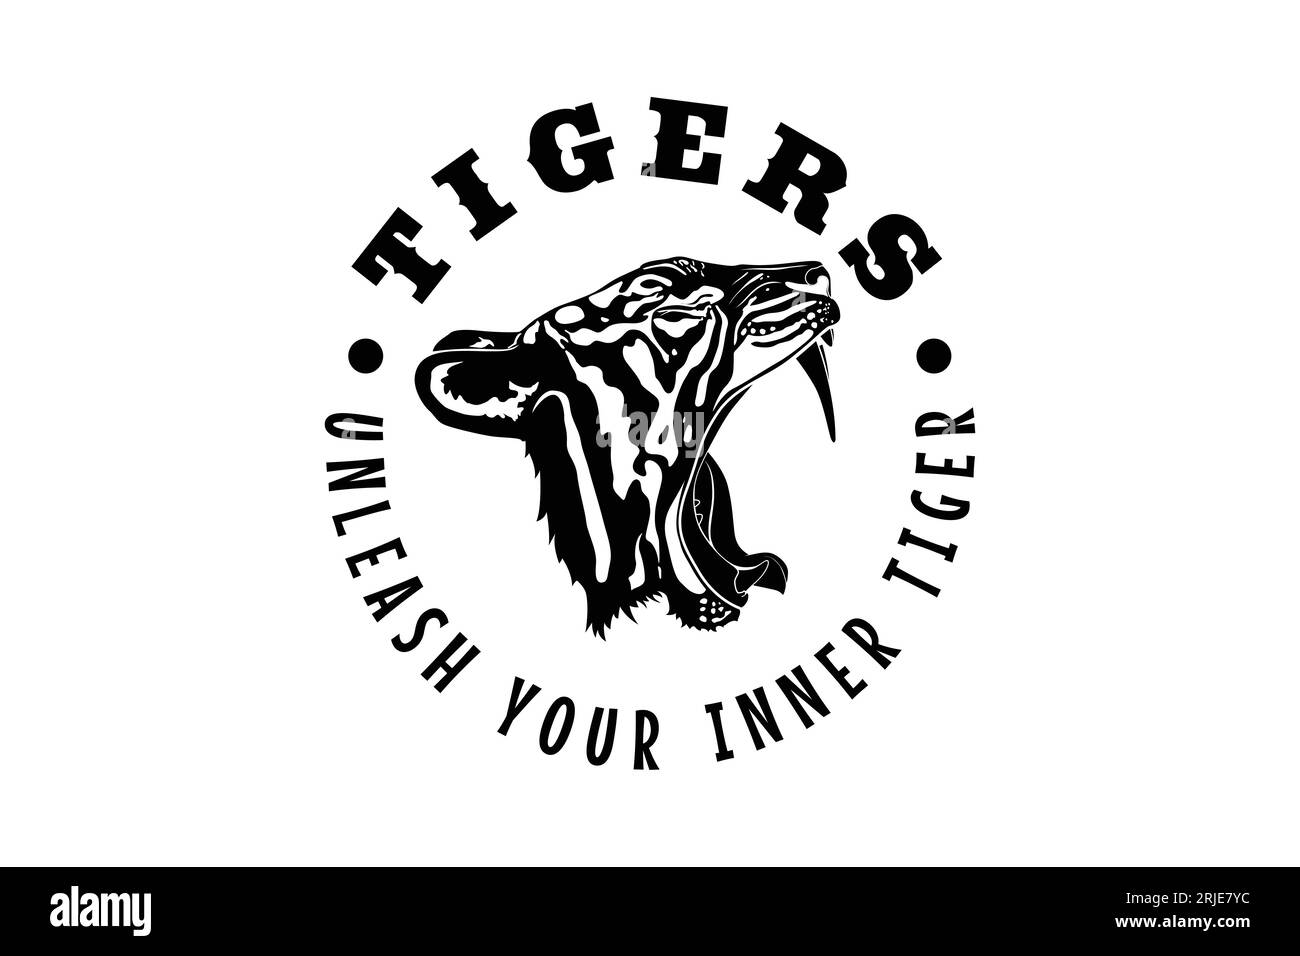 Tiger Company Logo With Roaring Tiger Head Vector Stock Vector